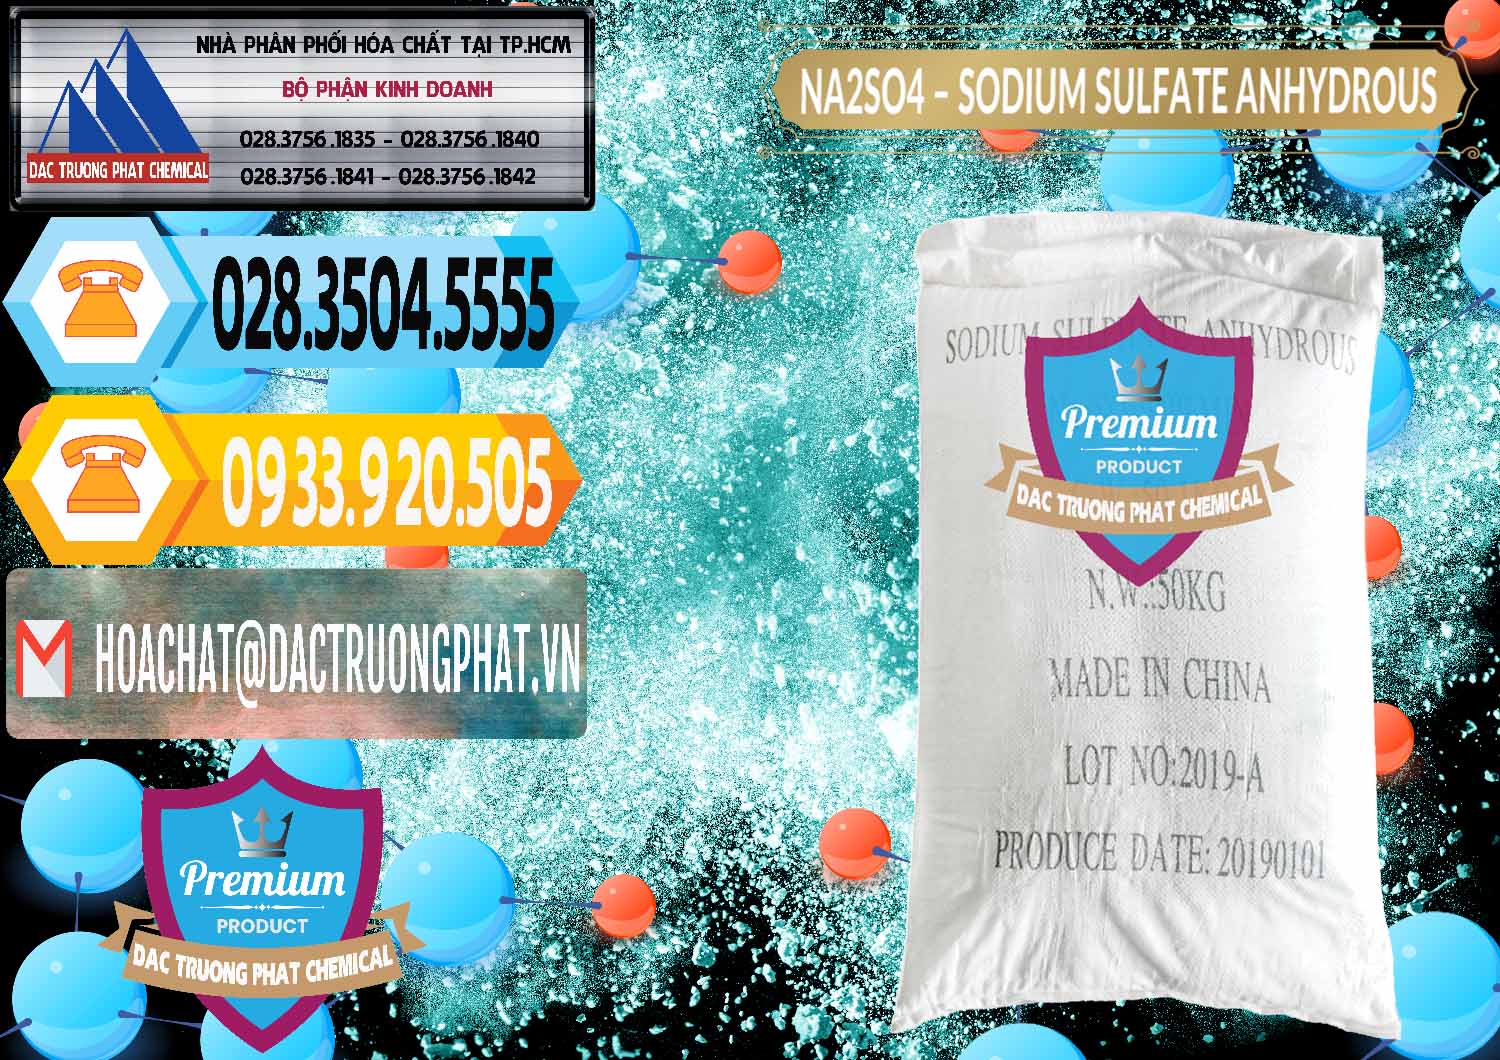 Chuyên nhập khẩu ( bán ) Sodium Sulphate - Muối Sunfat Na2SO4 PH 6-8 Trung Quốc China - 0099 - Cty chuyên bán & cung cấp hóa chất tại TP.HCM - hoachattayrua.net